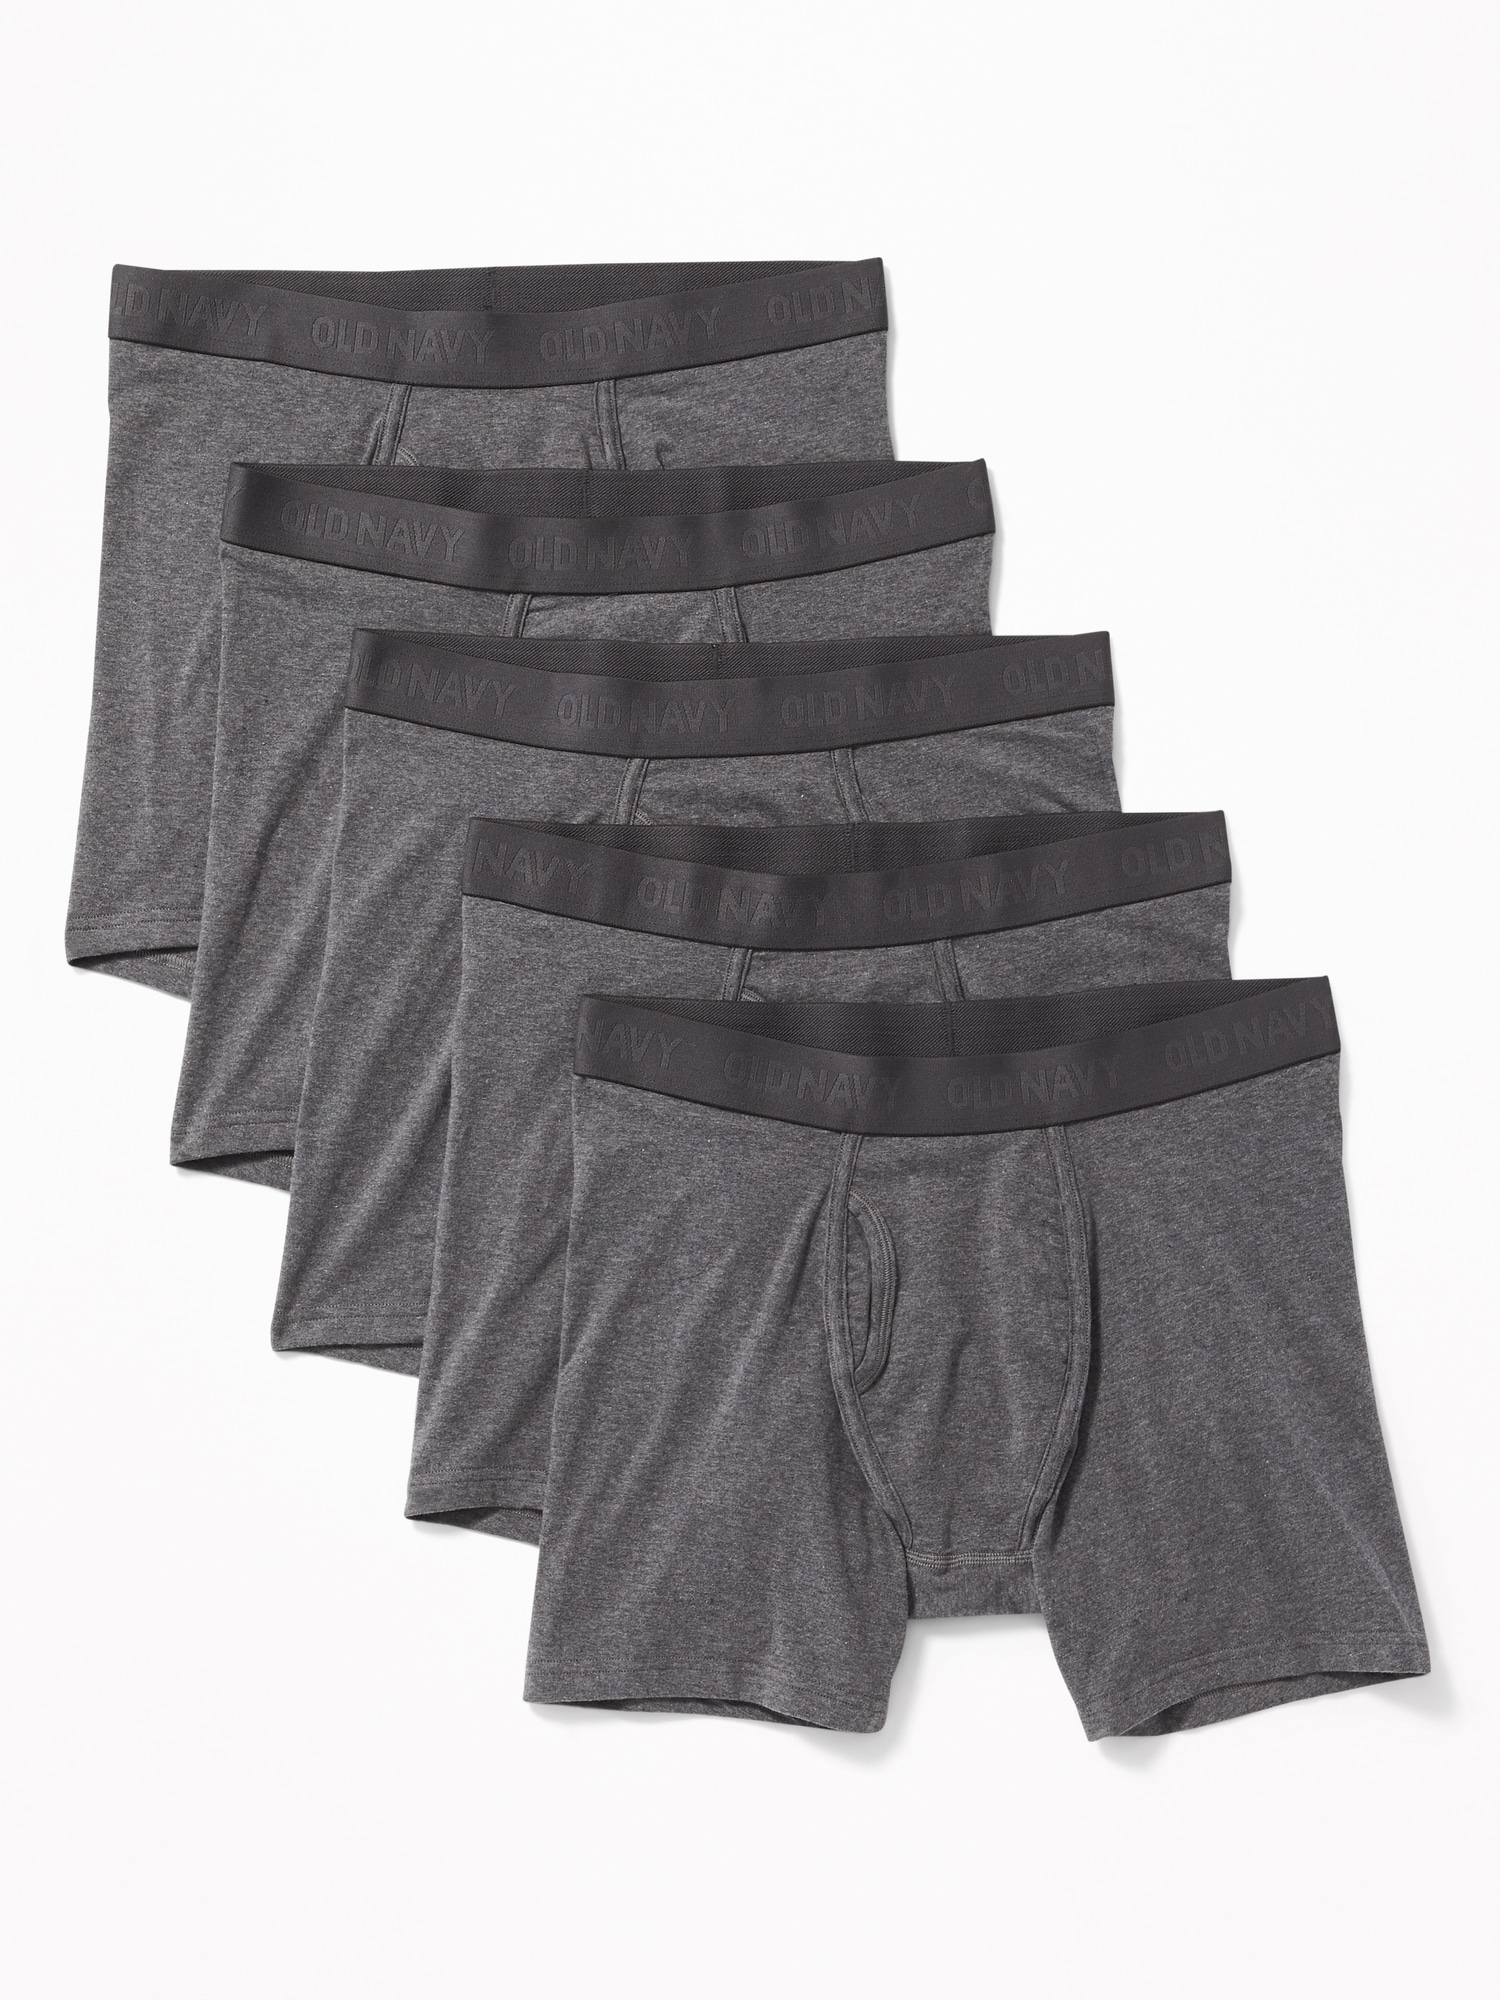 Soft-Washed Built-In Flex Boxer-Briefs Underwear 5-Pack for Men -- 6.25 ...